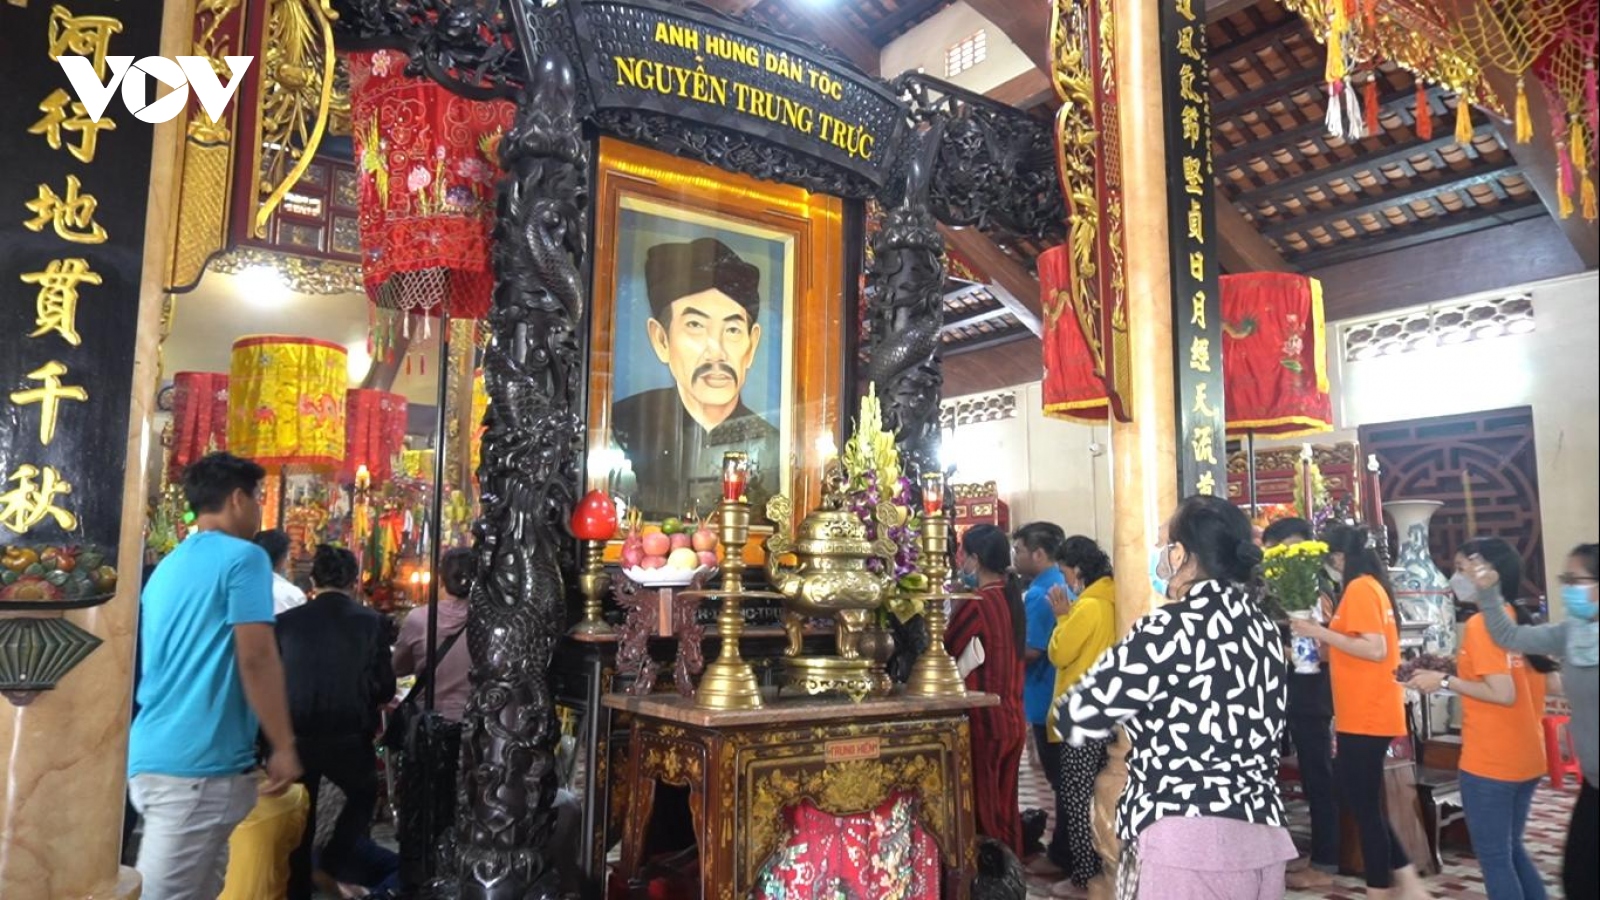 Rộn ràng lễ hội tưởng nhớ Anh hùng dân tộc Nguyễn Trung Trực ở Kiên Giang